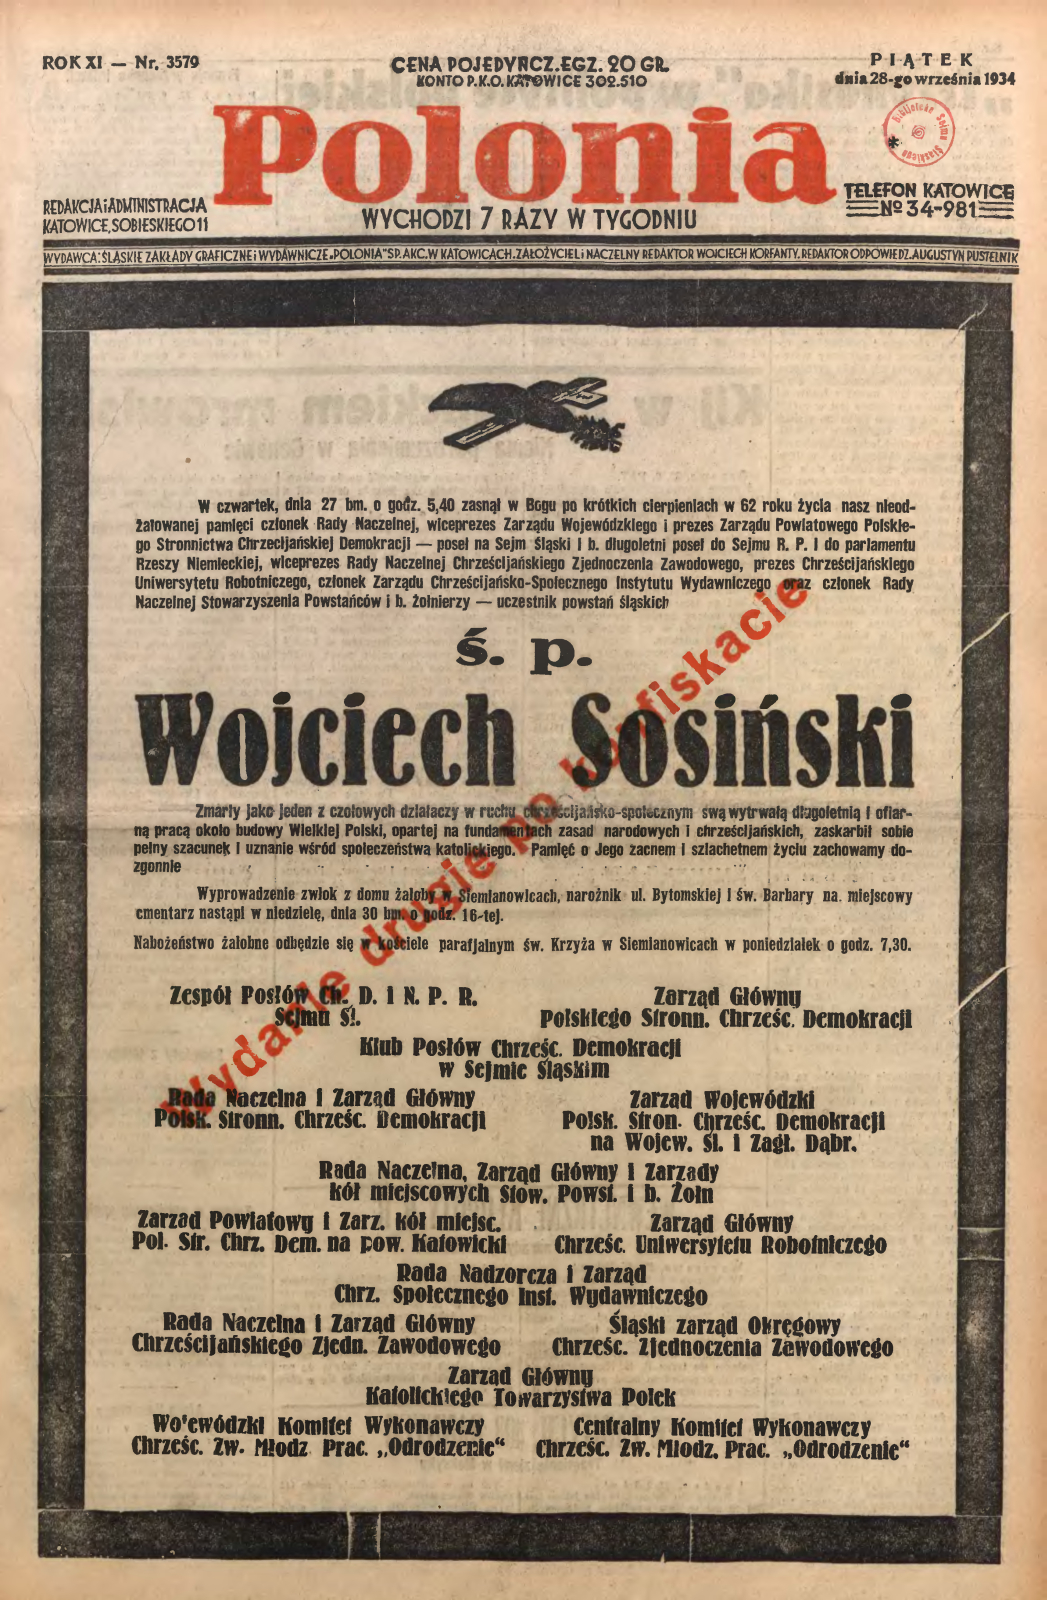 Okładka Polonii po śmierci Wojciecha Sosińskiego